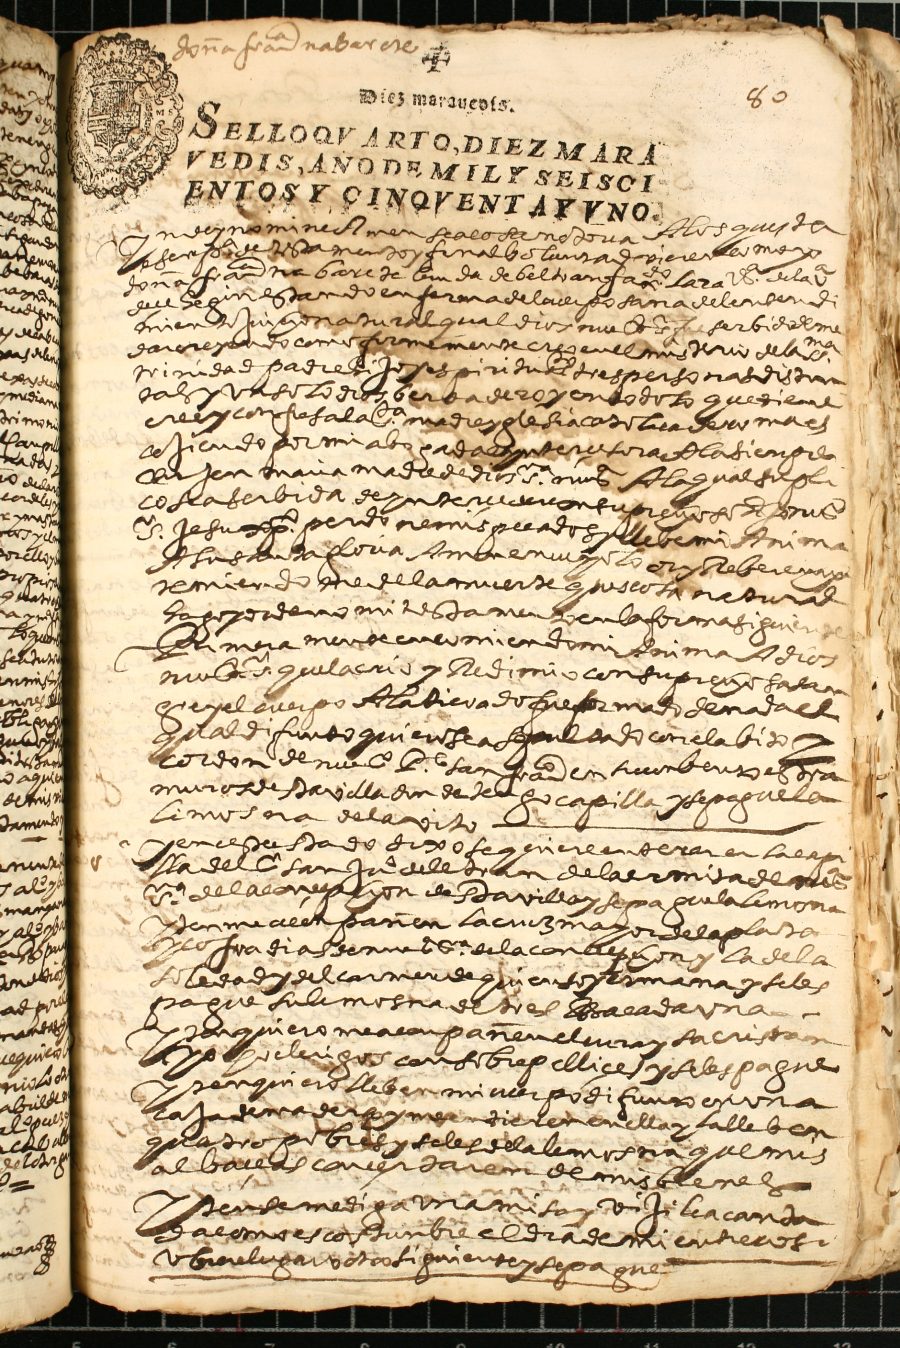 Testamento de Francisca Navarrete, viuda de Beltrán Fajardo Lara, vecina de Cehegín.